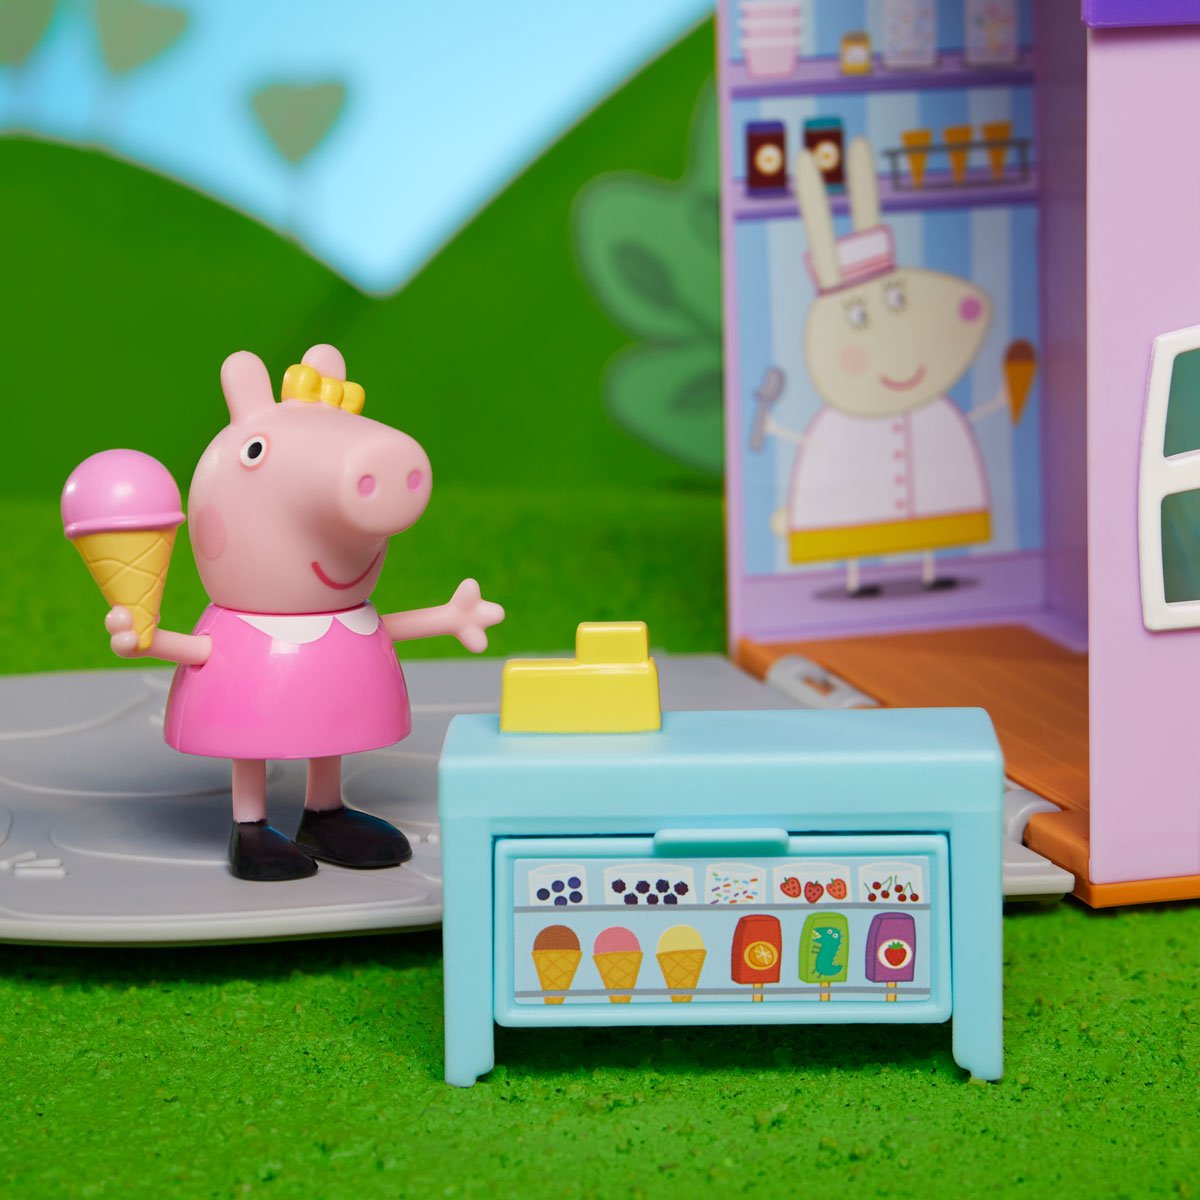 Игровой набор Peppa Pig Пеппа в магазине мороженого (F4387) - фото 8